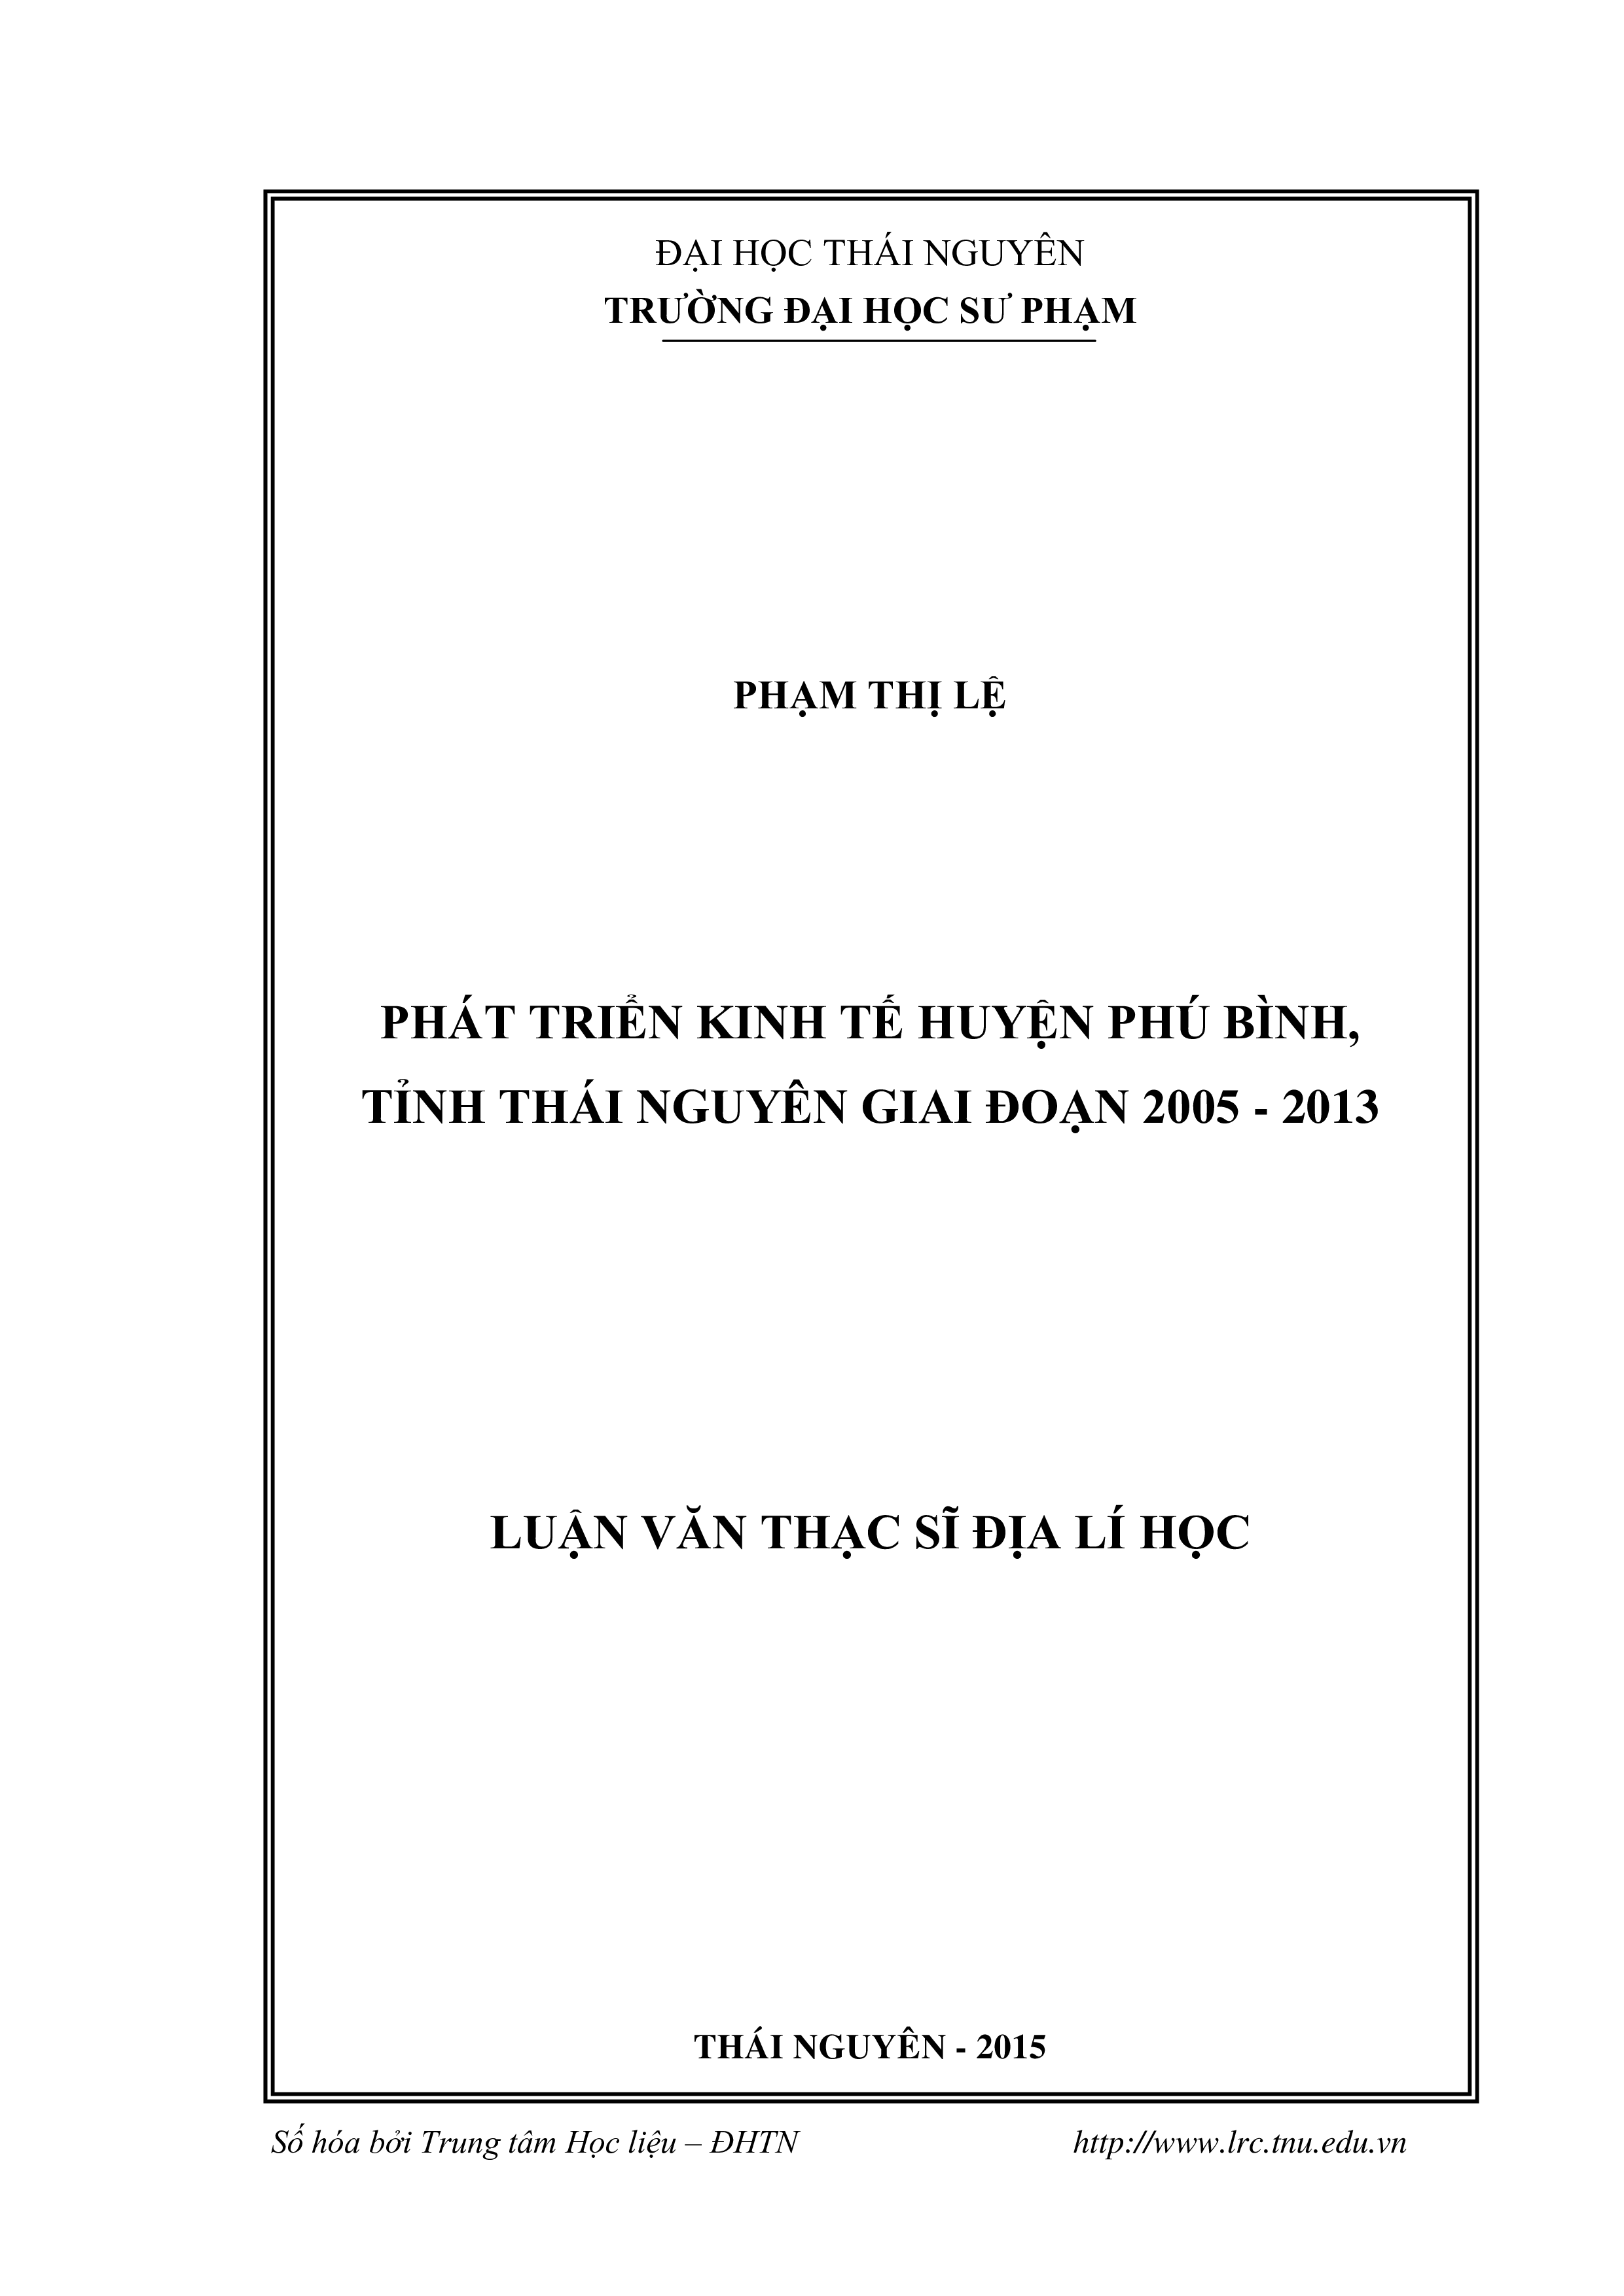 Phát triển kinh tế huyện Phú Bình, tỉnh Thái Nguyên giai đoạn 2005 – 2013